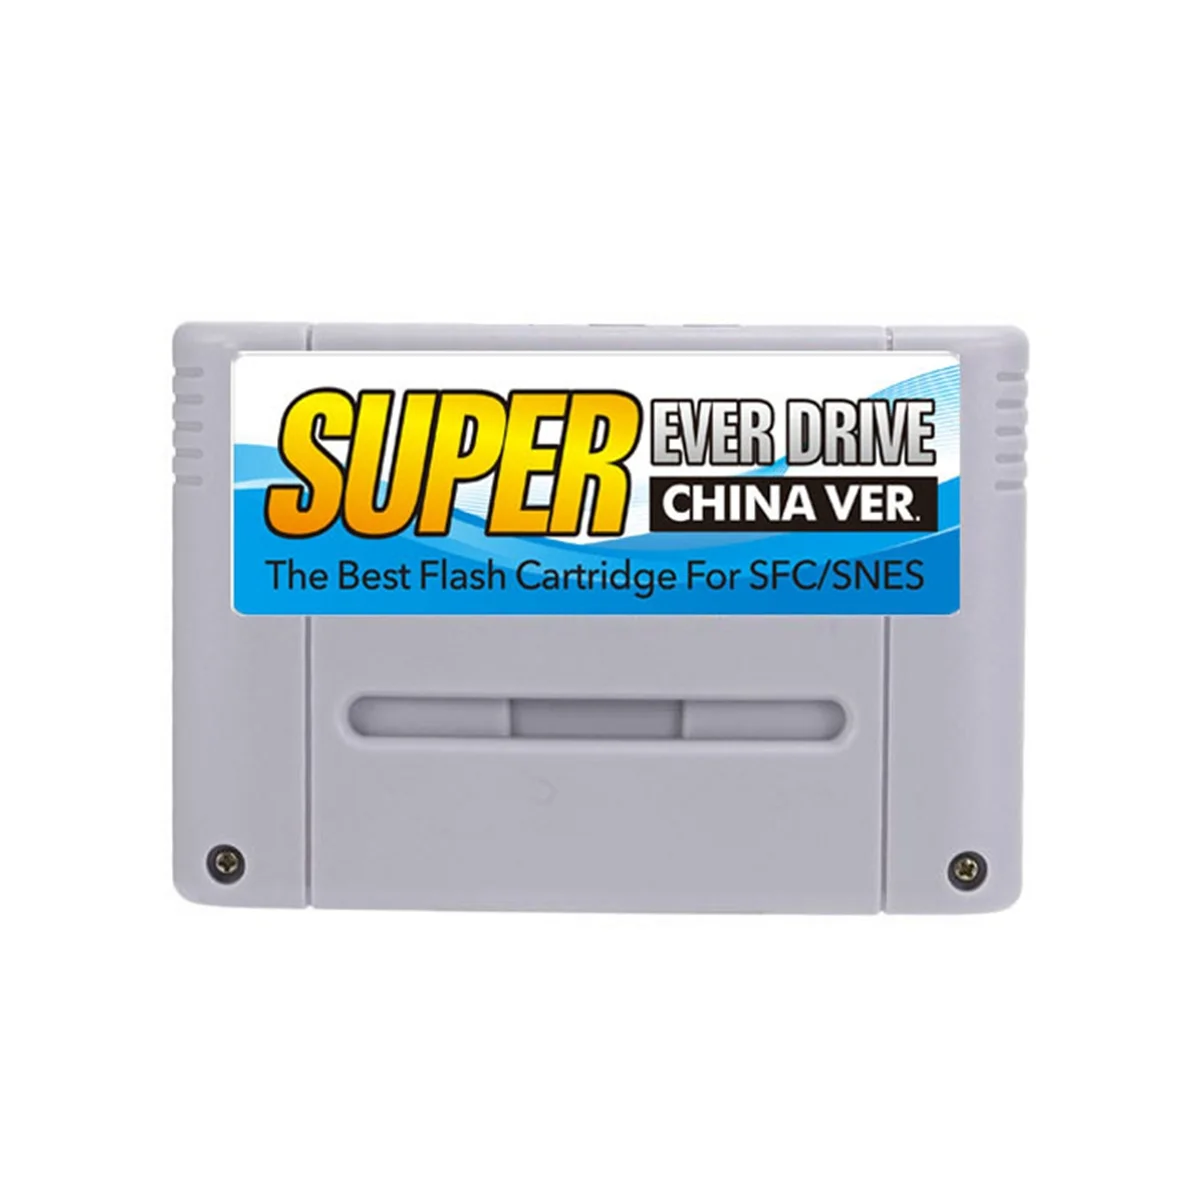 

Супер DIY ретро 800 в 1 Pro игровой Картридж для 16-битной игровой консоли карты китайская версия для SFC/SNES, серый